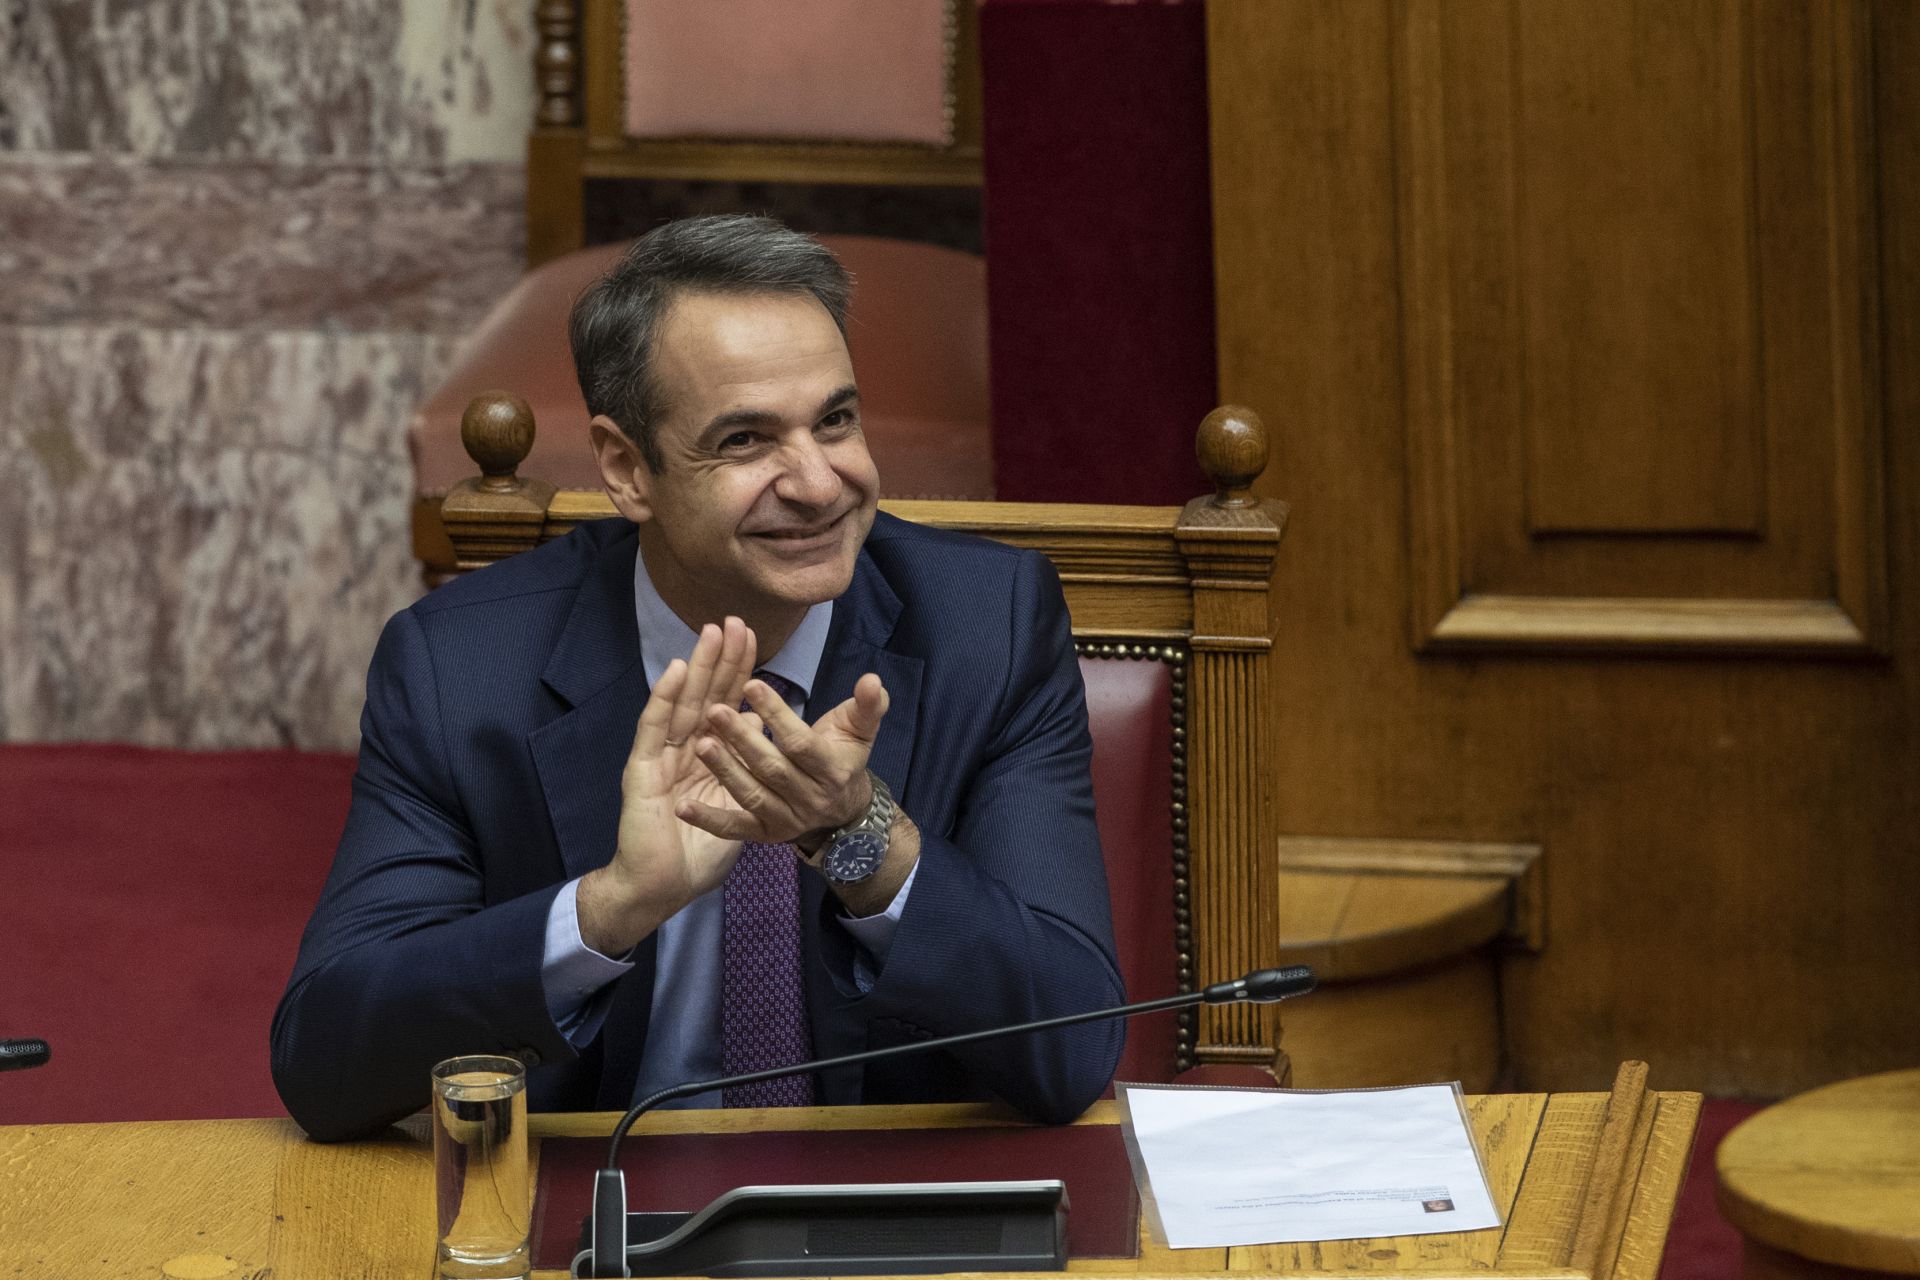 Гръцкият премиер Кирякос Мицотакис аплодира избора на новия гръцки президент